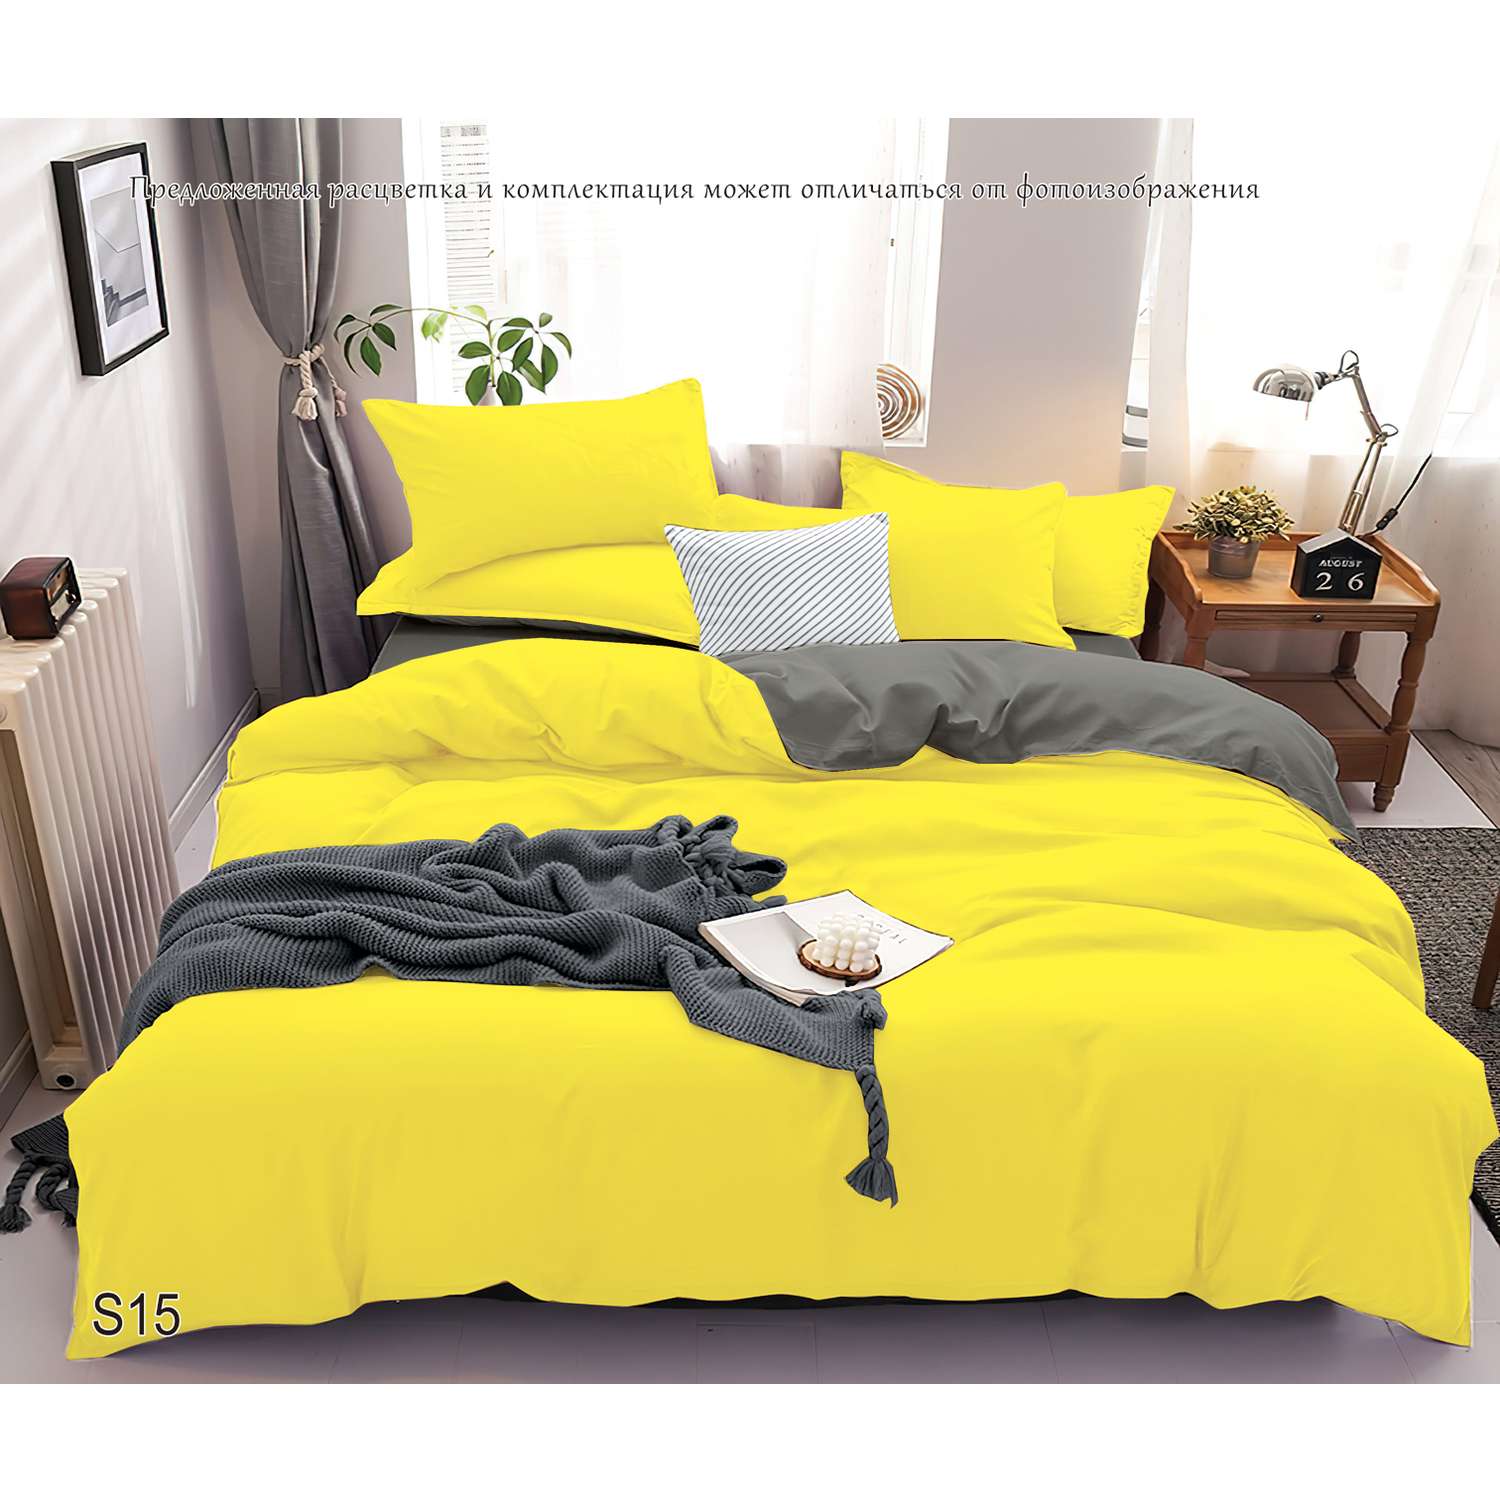 Комплект постельного белья PAVLine Манетти полисатин Евро желтый/серый S15 - фото 2